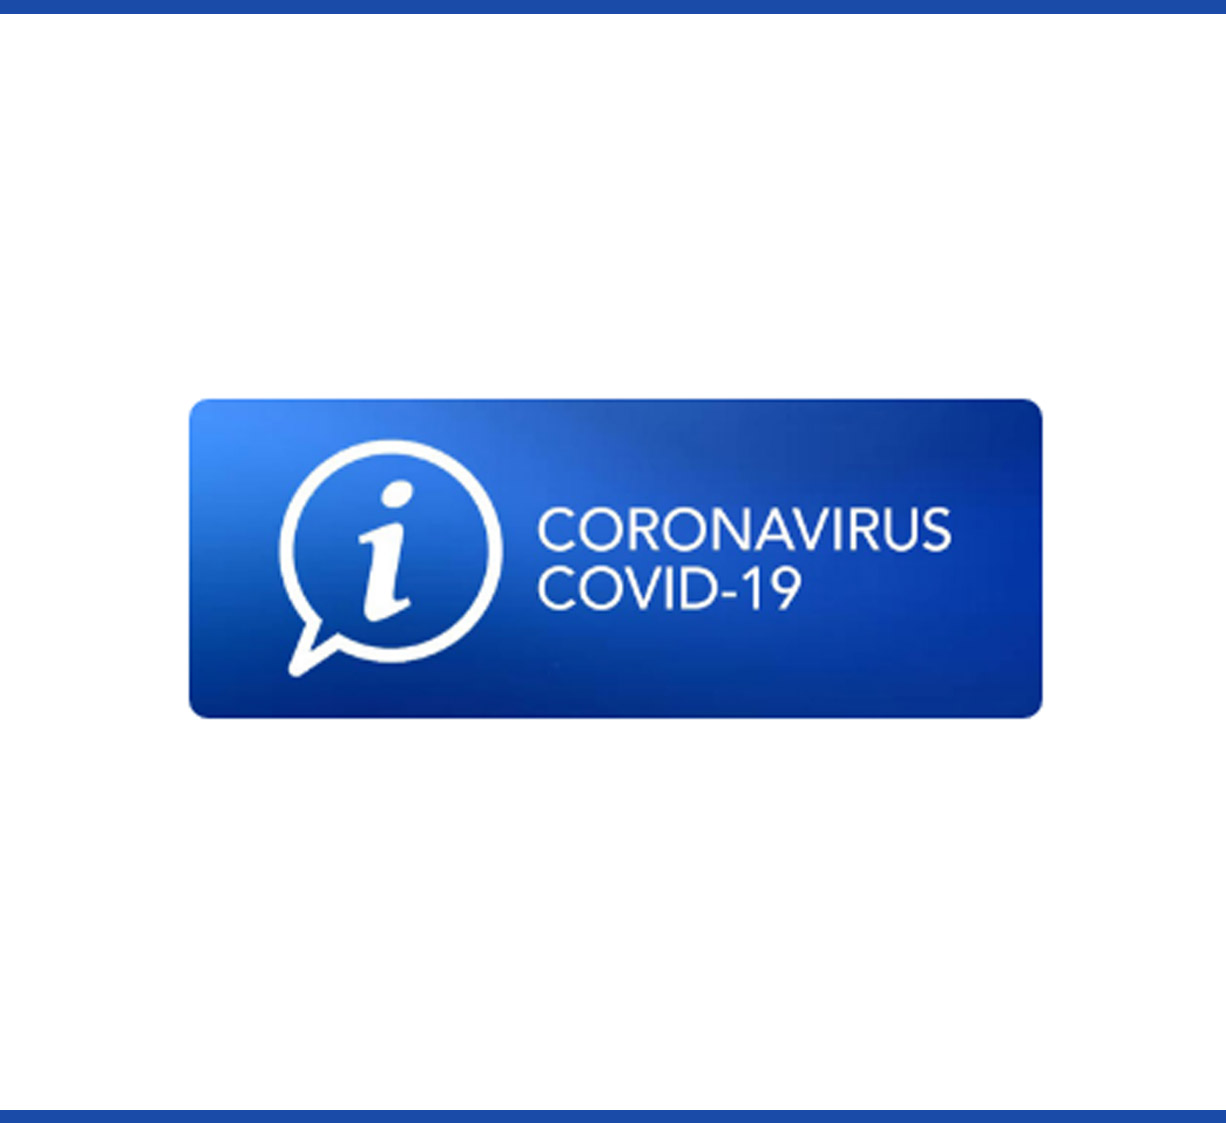 Coronavirus - Information